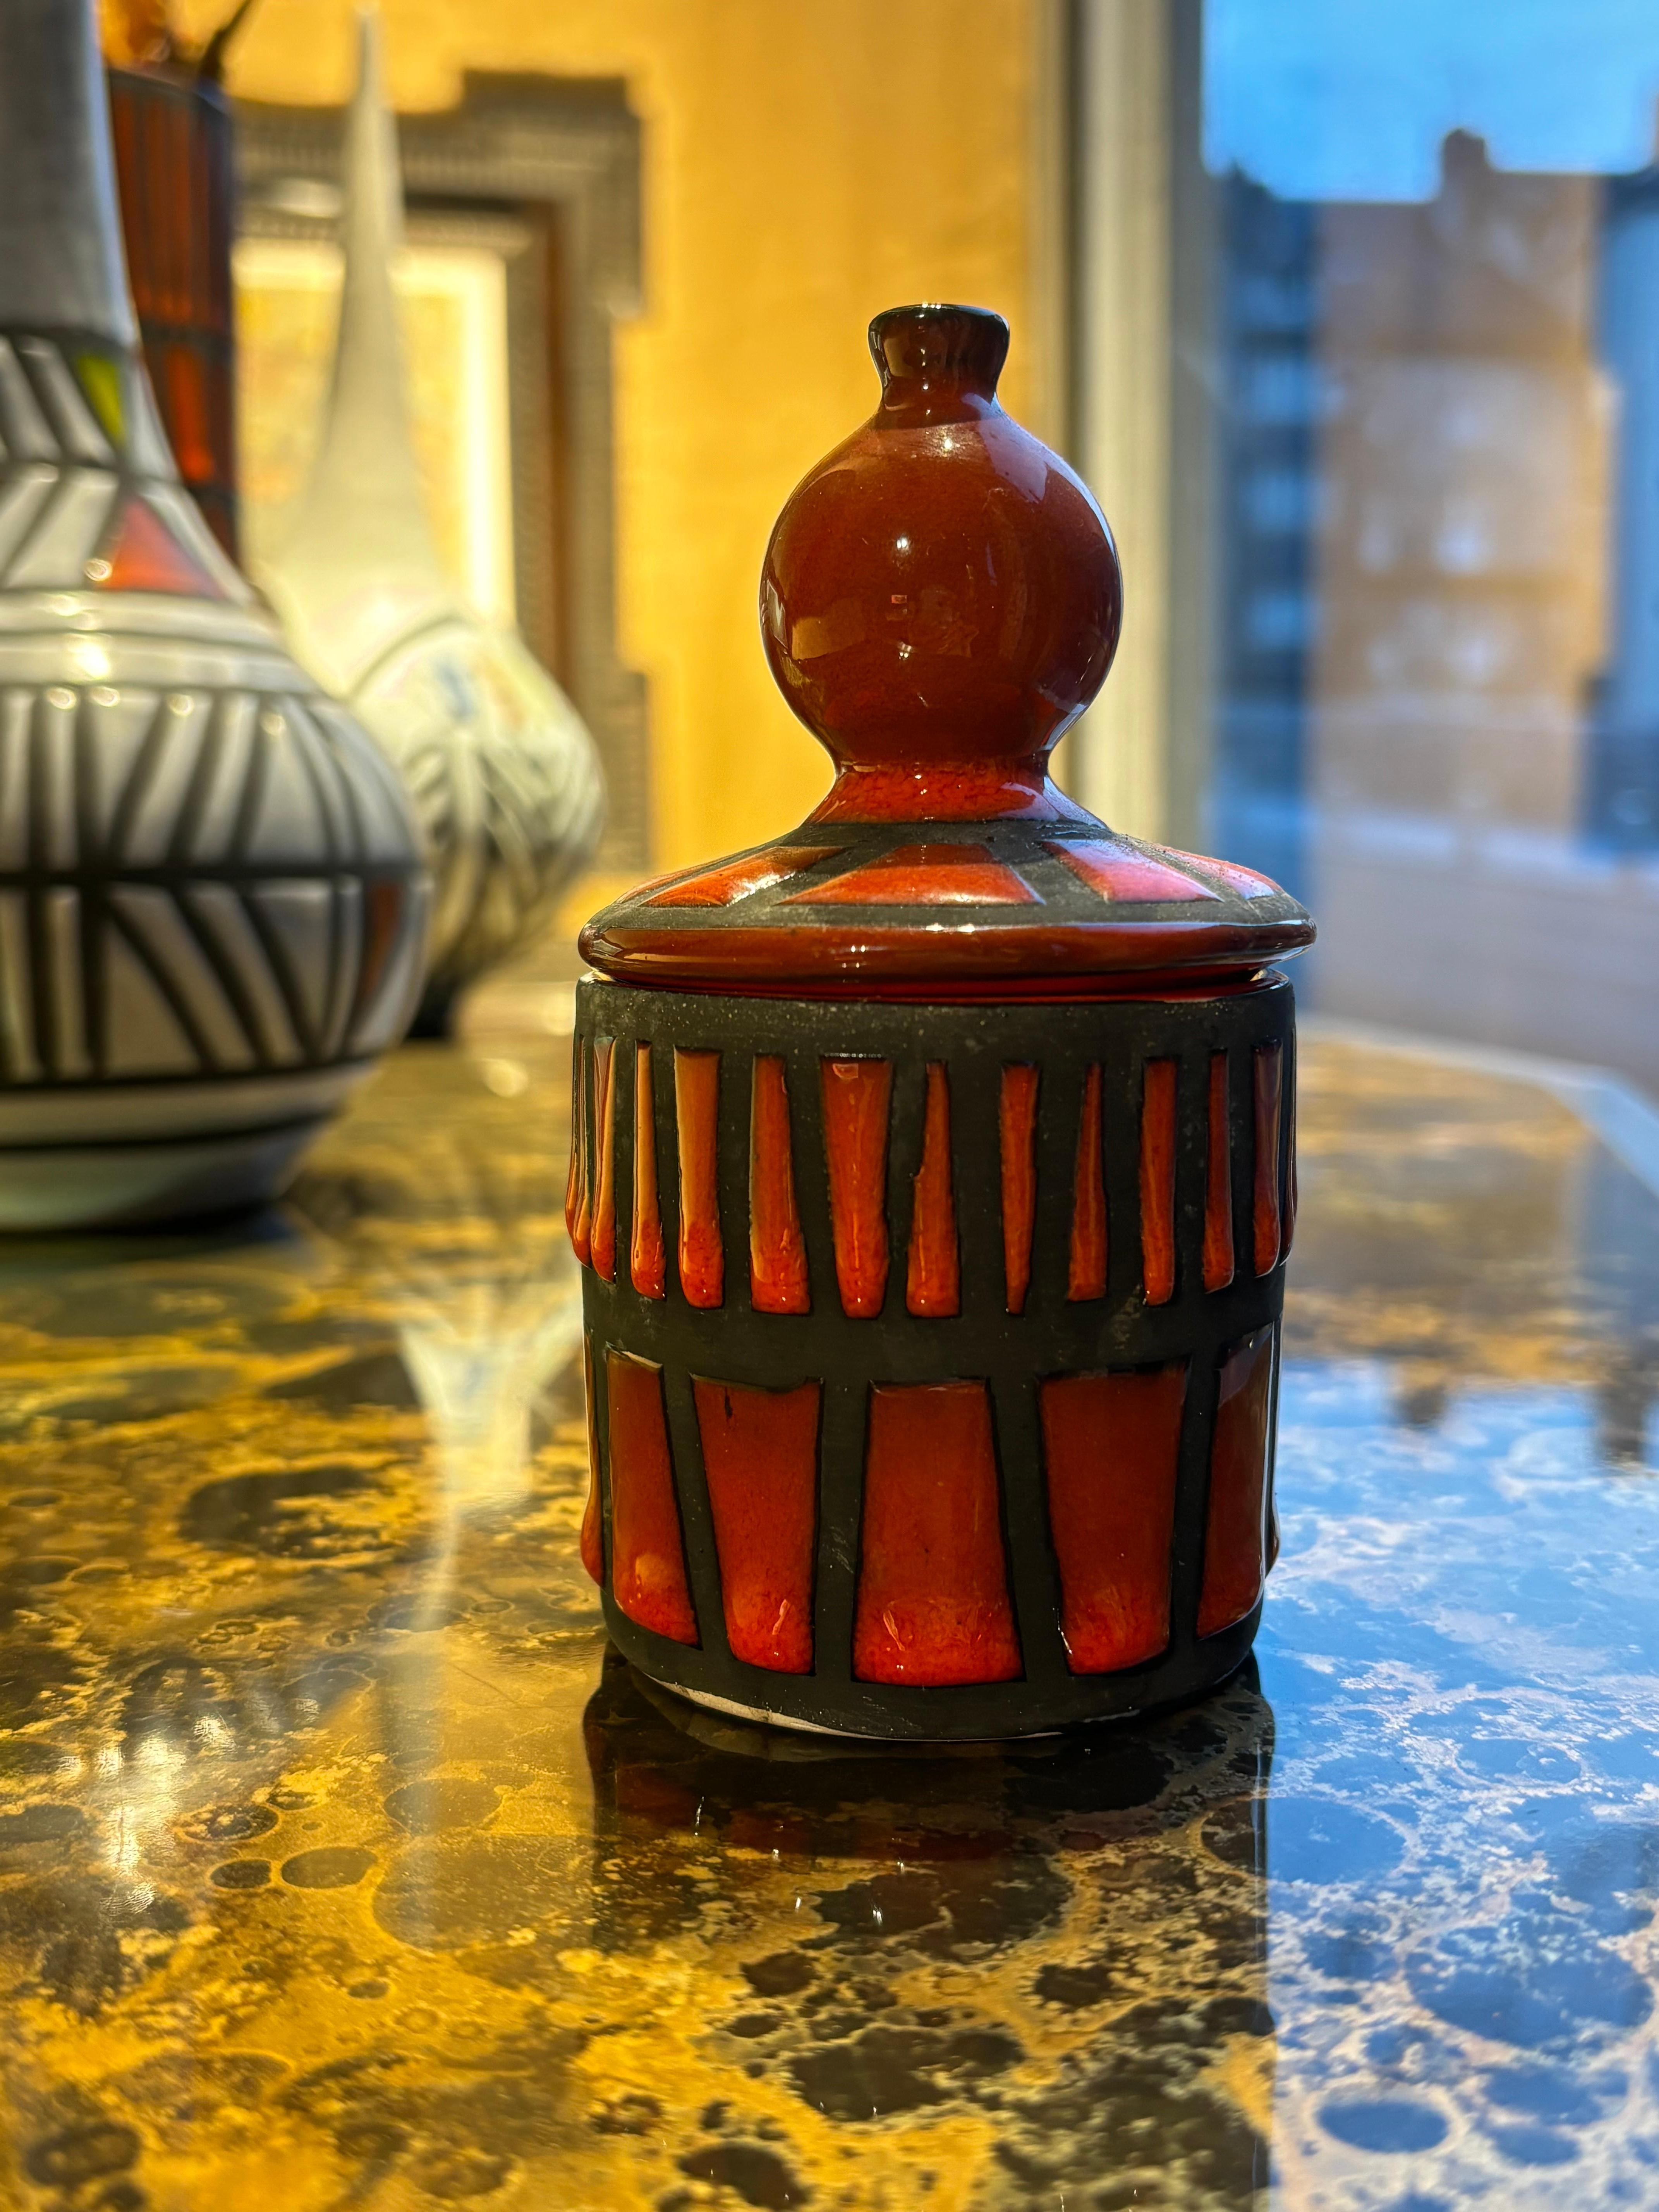 Roger Capron 
Boîte à rouleaux en céramique émaillée rouge.
Signé dans le cul
Circa 1950 
